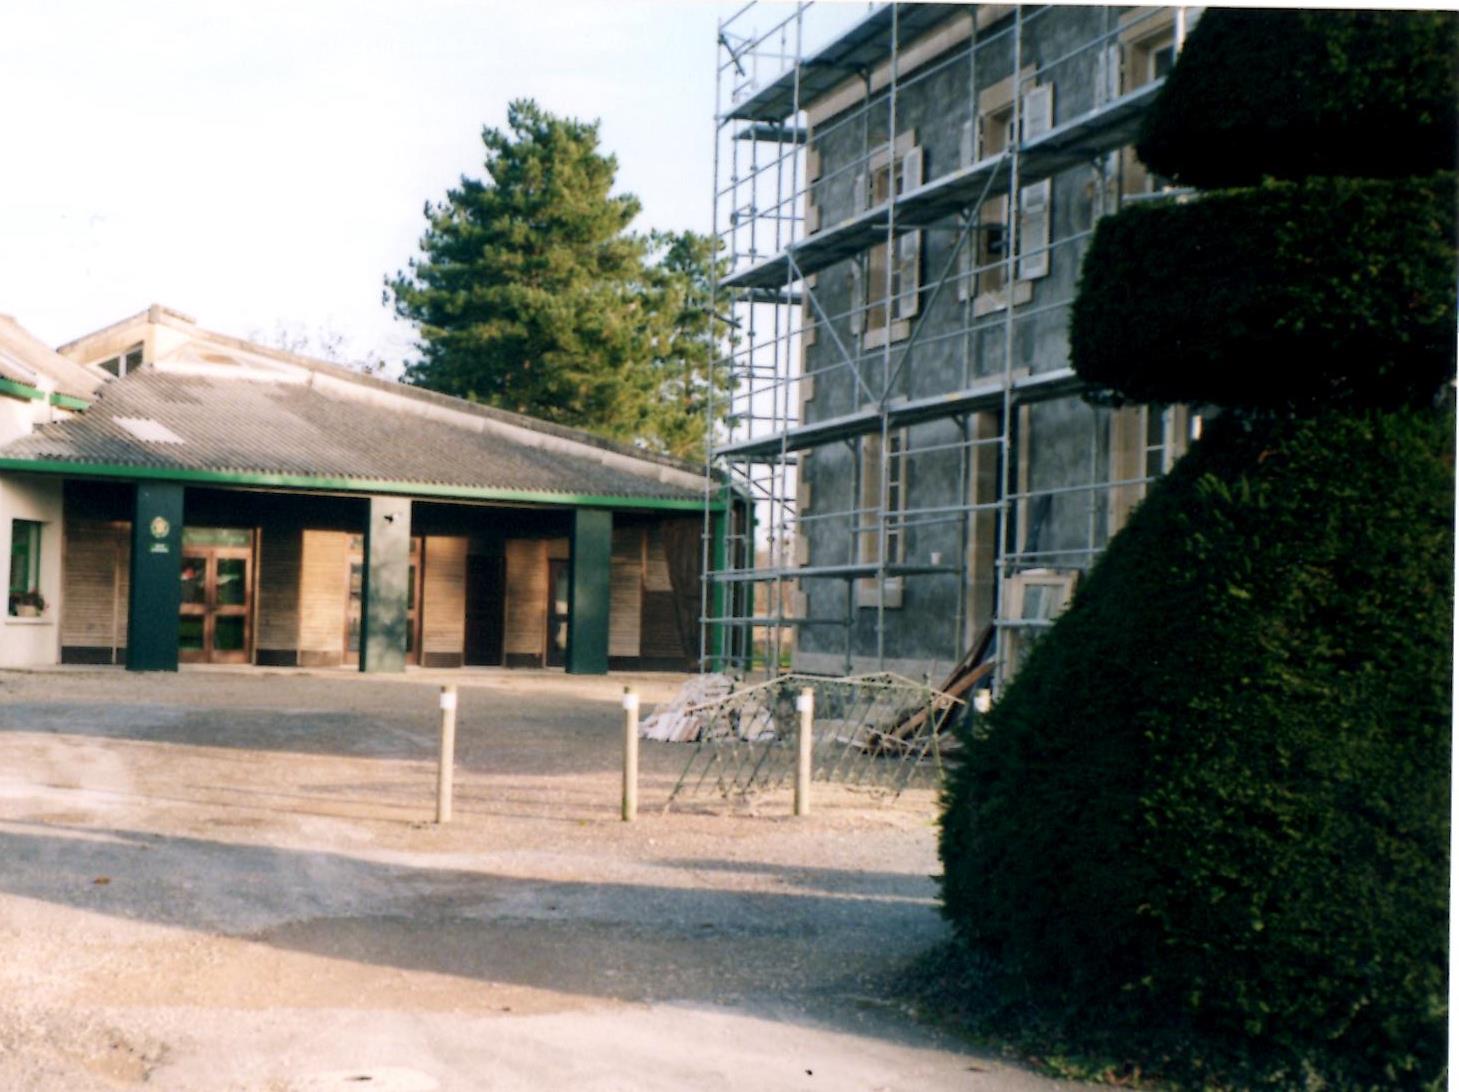 Mairie restauration 2004.jpg